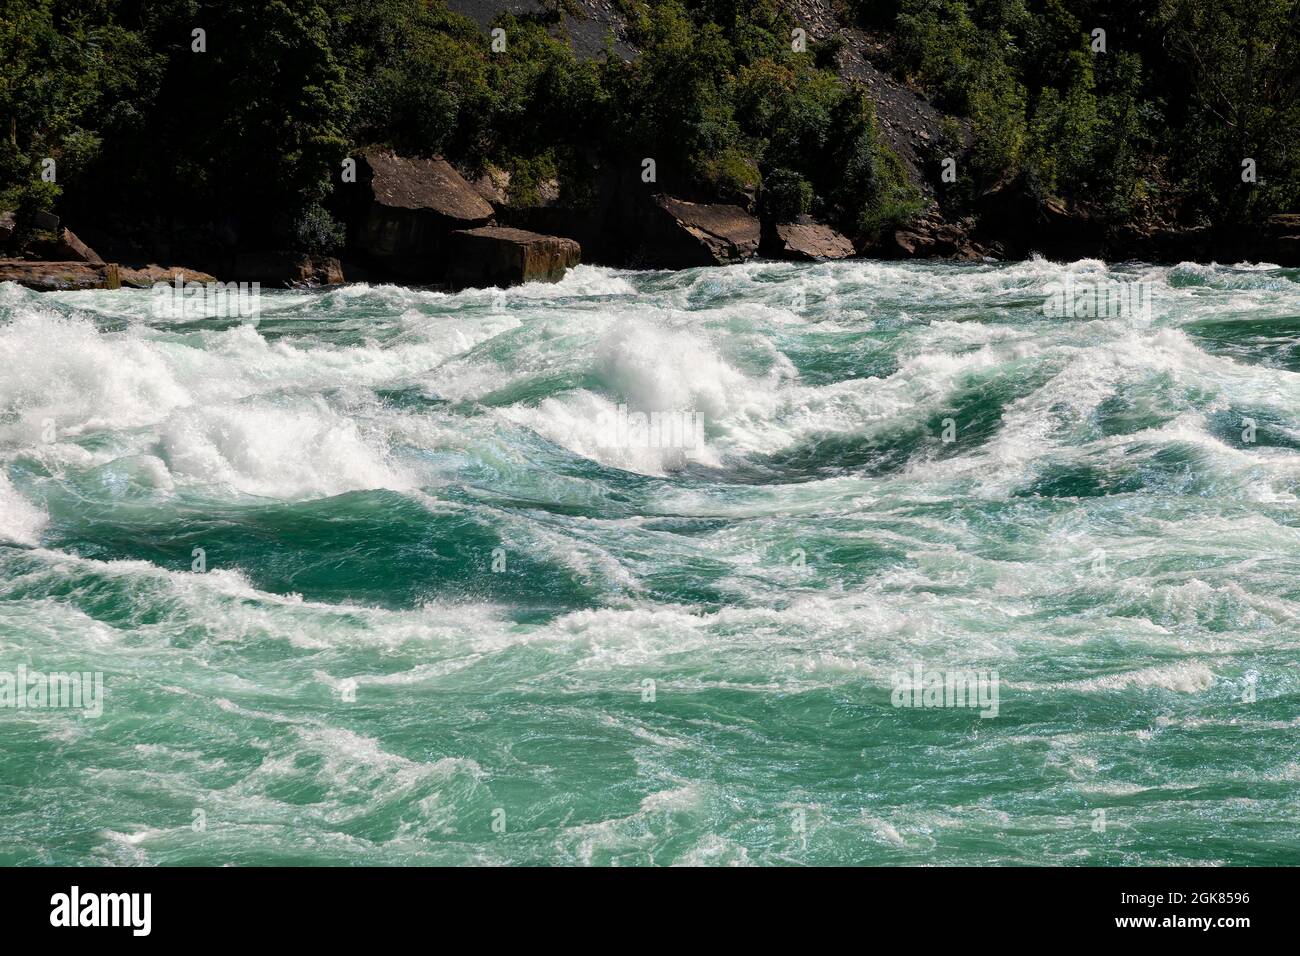 Les rapides d’eau blanche de classe 6 de la rivière Niagara provenant de l’attraction White Water Walk dans la gorge du Niagara à Niagara Falls, Ontario, Canada Banque D'Images